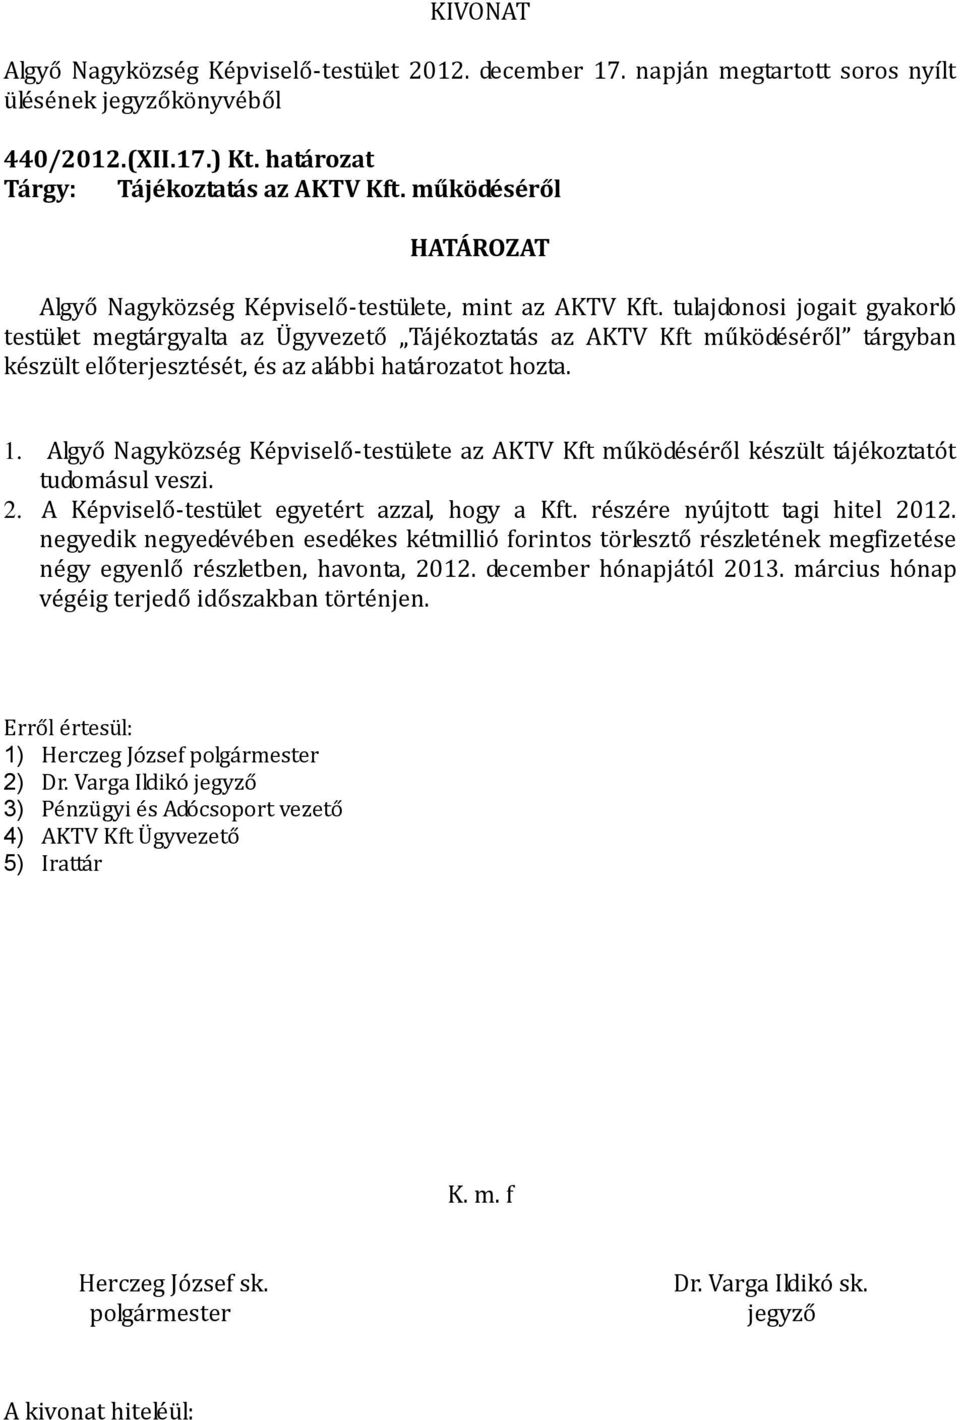 Algyő Nagyközség Képviselő-testülete az AKTV Kft működéséről készült tájékoztatót tudomásul veszi. 2. A Képviselő-testület egyetért azzal, hogy a Kft. részére nyújtott tagi hitel 2012.